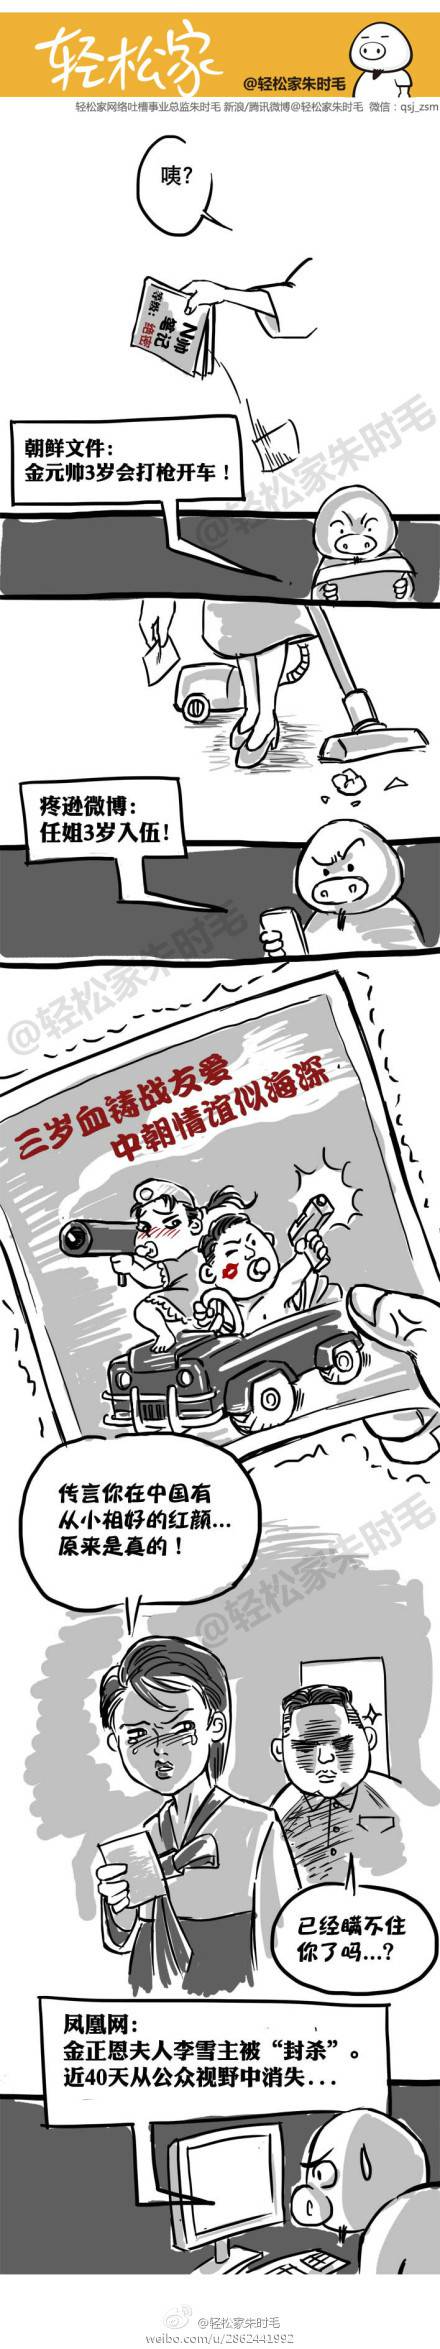 邪恶漫画爆笑囧图第303刊：新闻热点